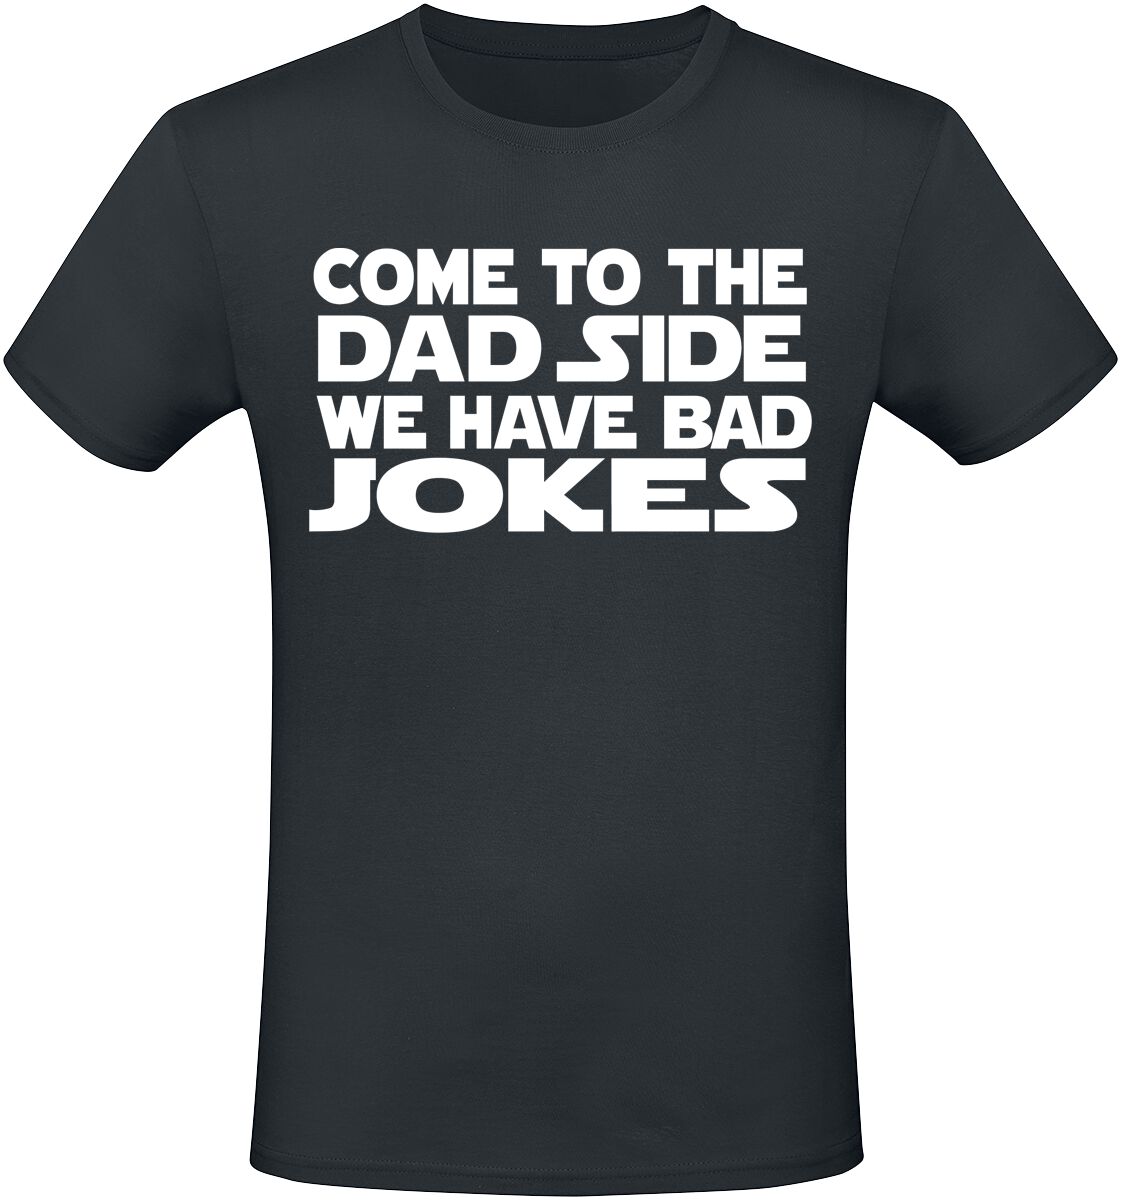 Sprüche T-Shirt - Come To The Dad Side We Have Bad Jokes - M bis 3XL - für Männer - Größe 3XL - schwarz